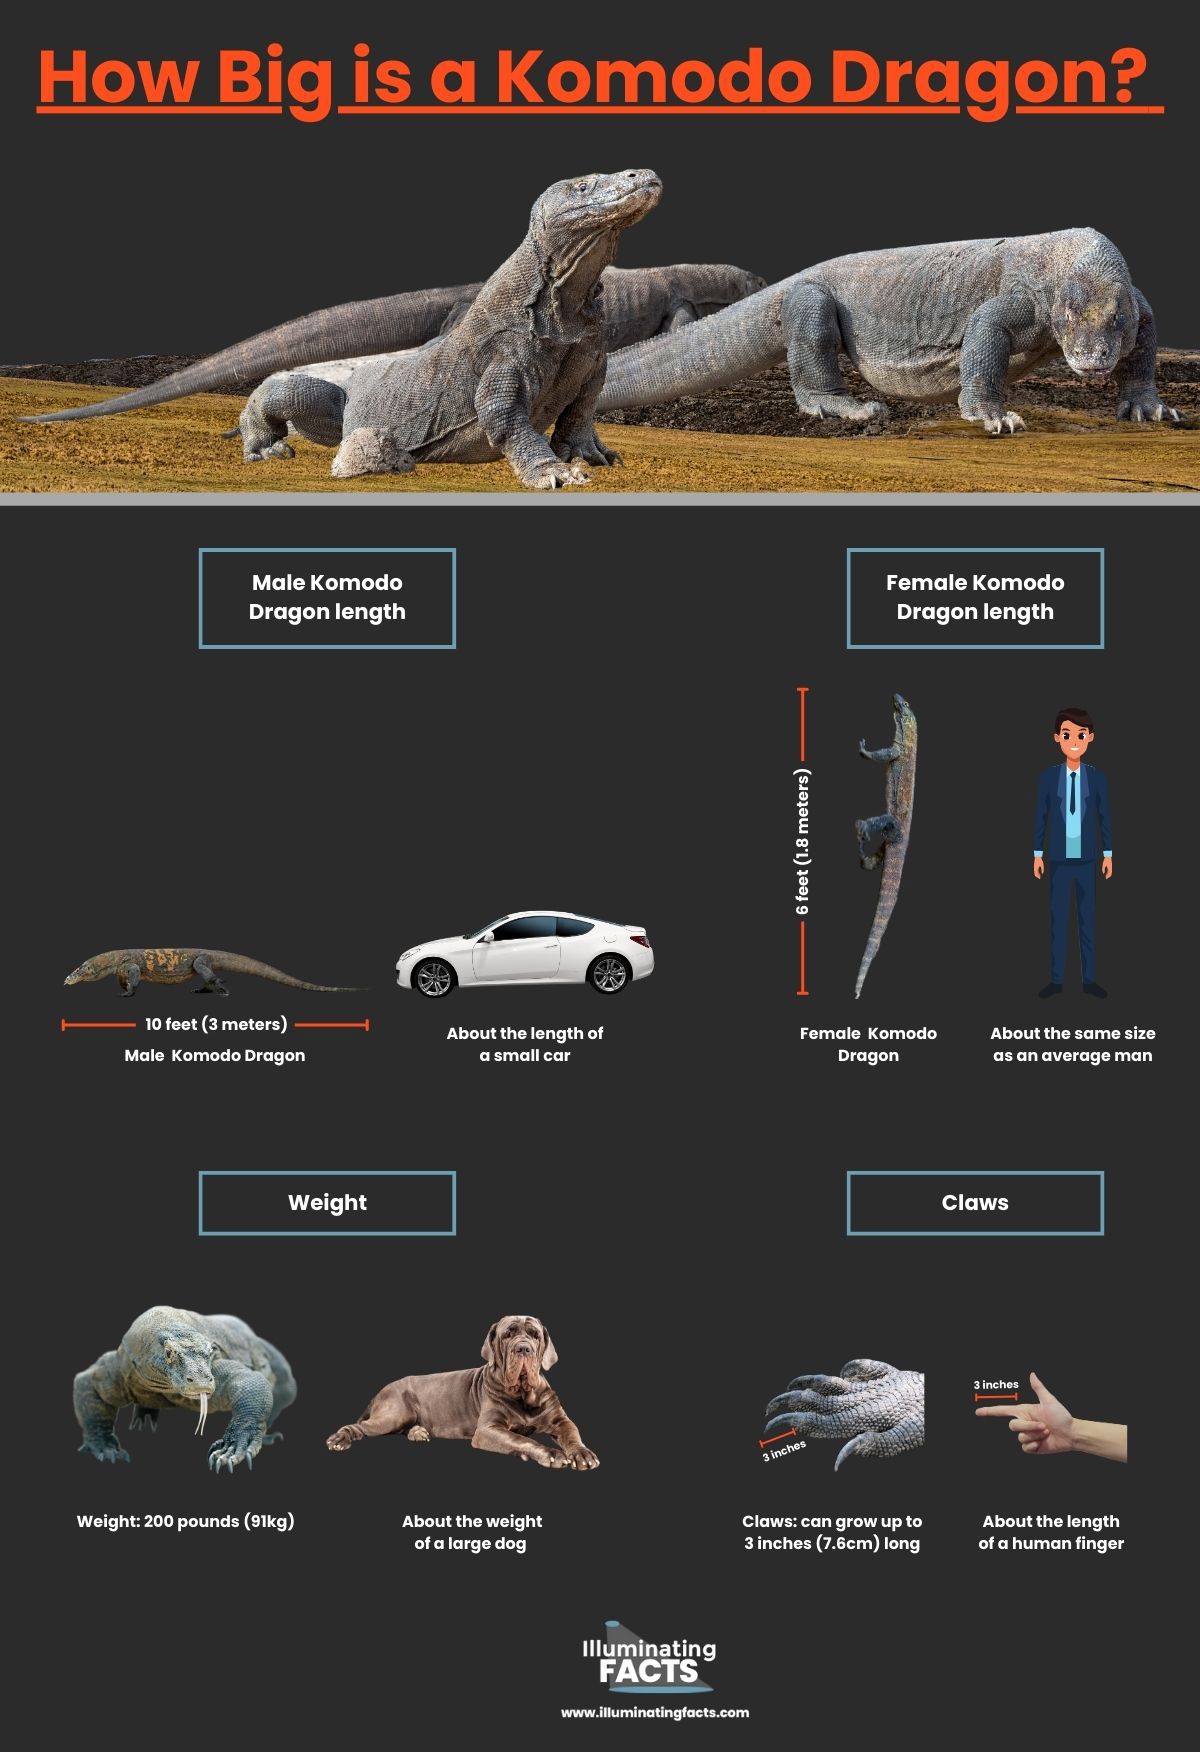 How Big is a Komodo Dragon?